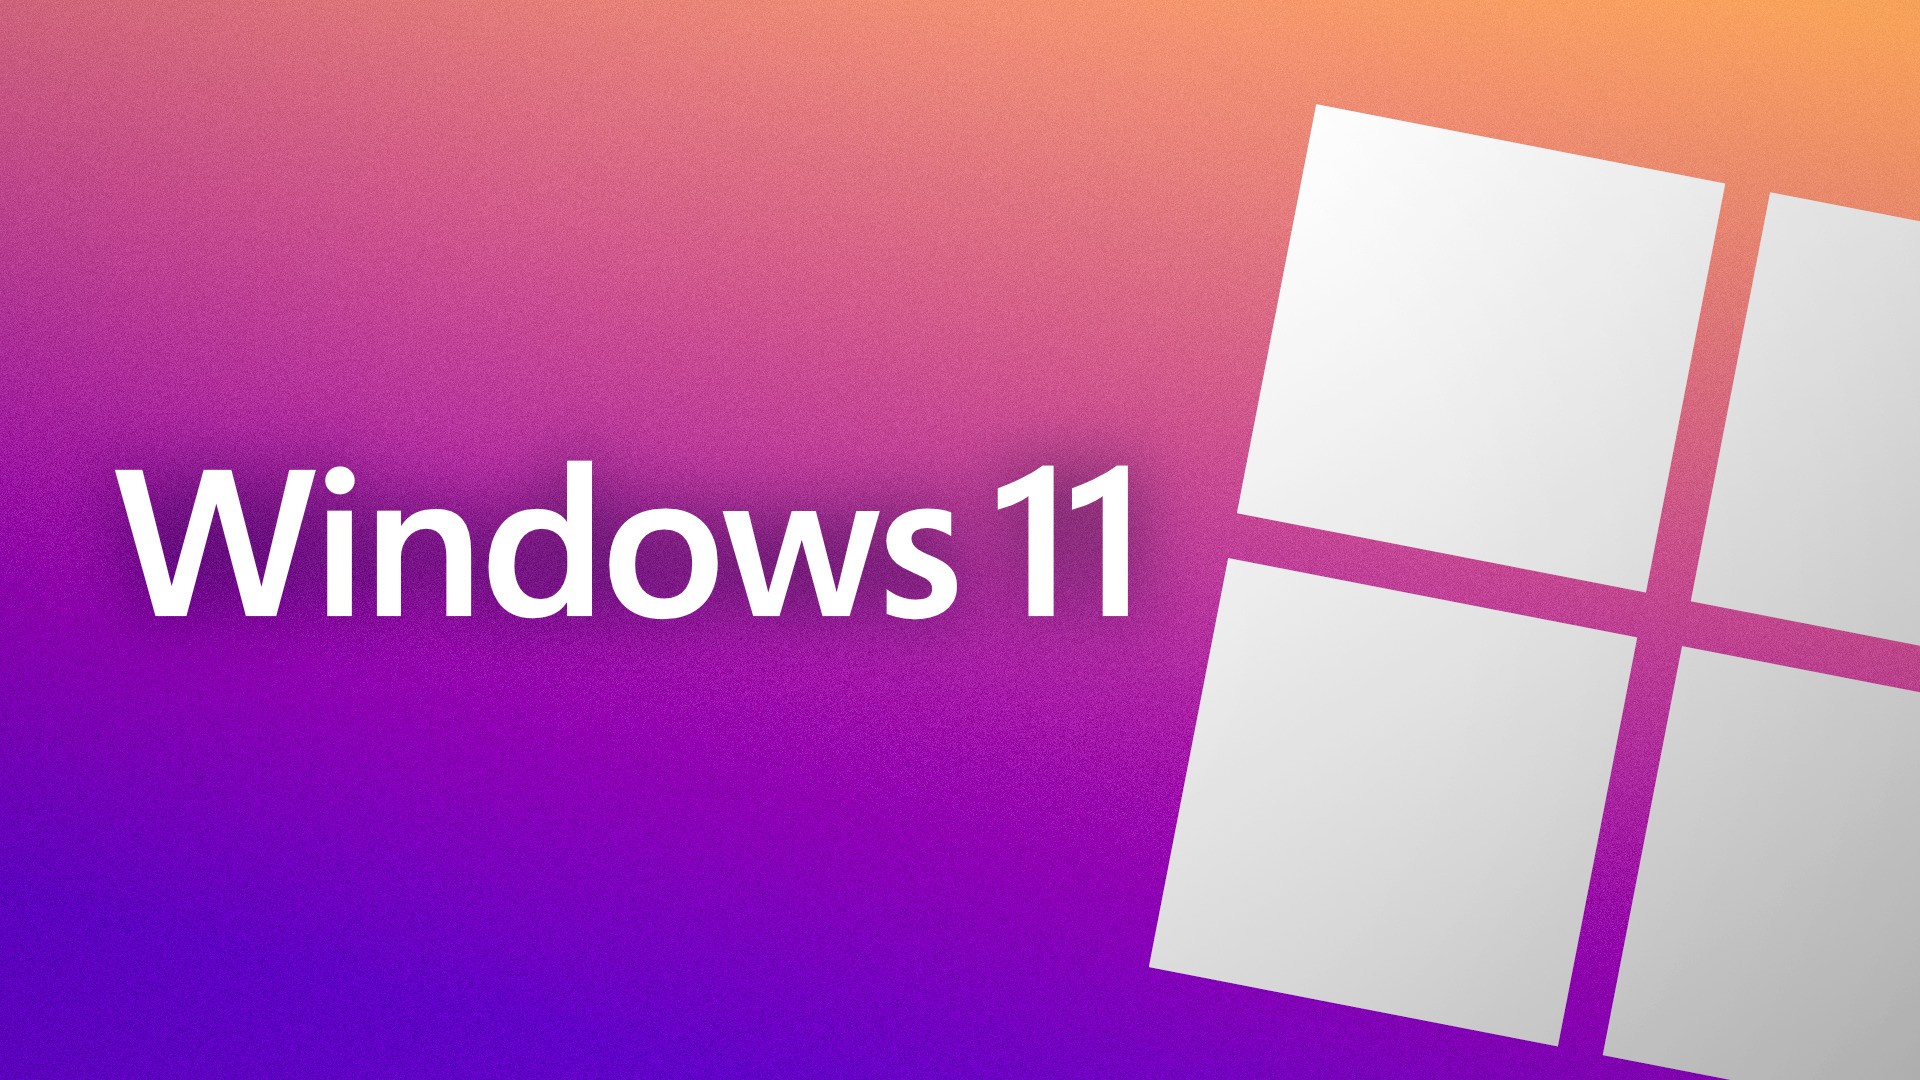 Windows 11 se met à jour : l'IA débarque, Paint revu, arrivée des passkeys... toutes les nouveautés